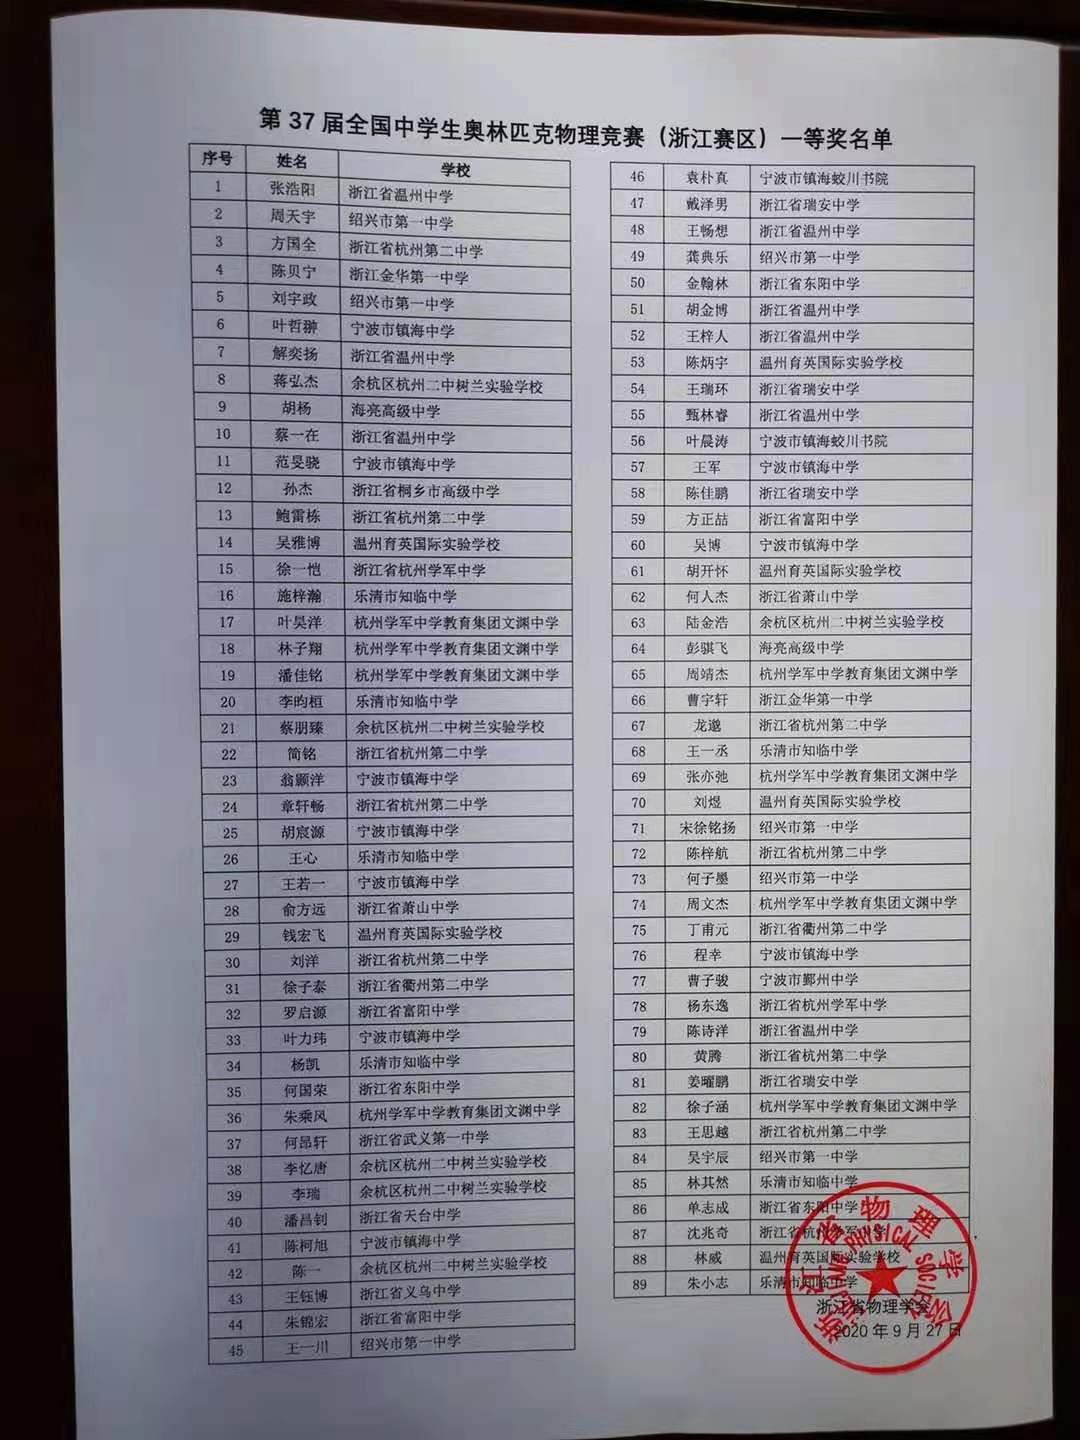 浙江省2020年第37届中学生物理竞赛复赛一等奖获奖名单